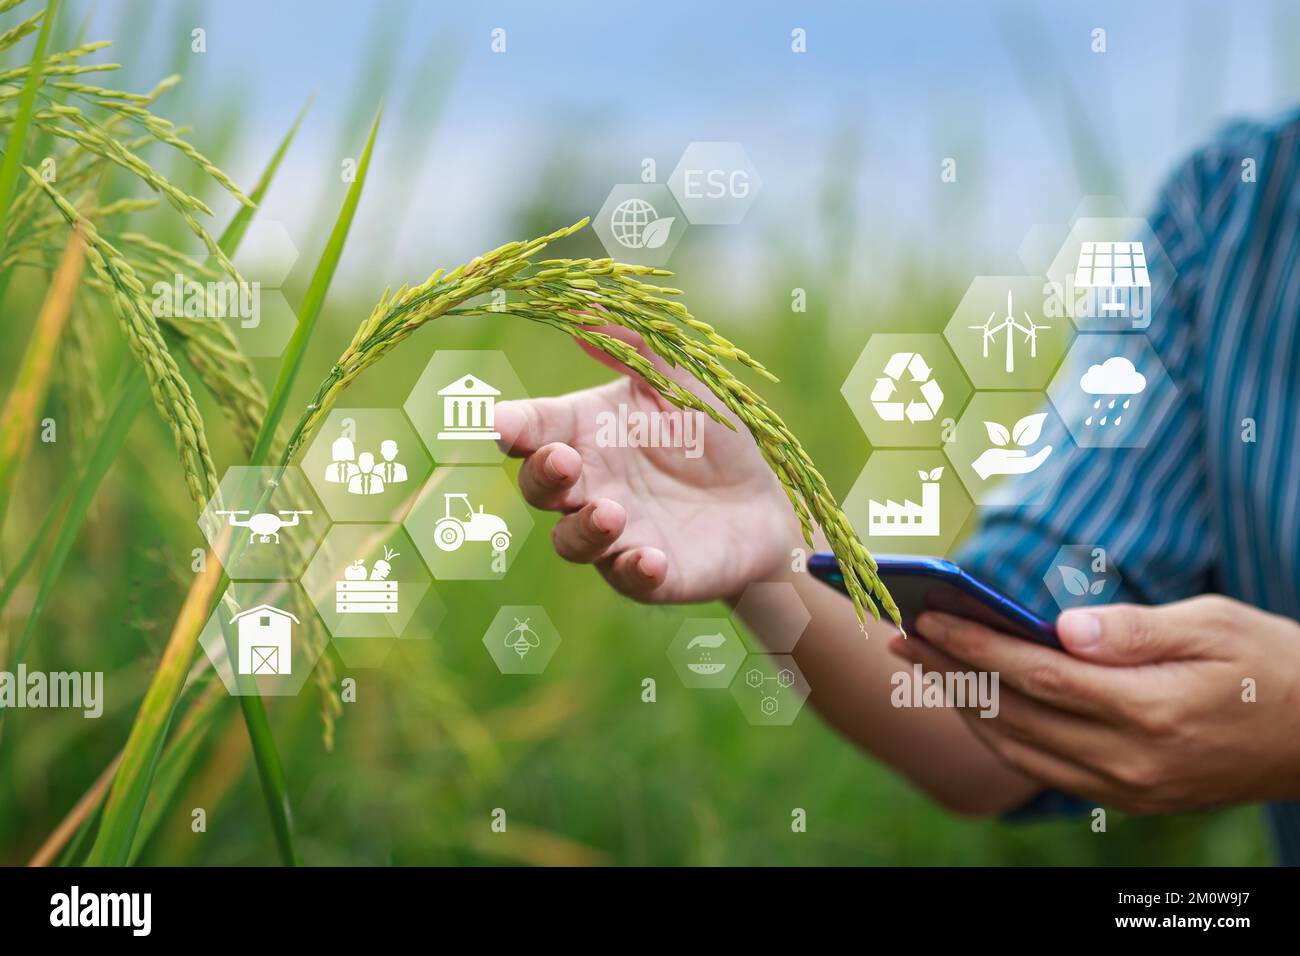 ESG Icon-Konzept bei Rohreisprodukten in der Hand der Landwirte für ökologische, soziale und verantwortungsvolle Staatsführung in nachhaltigem und ethischem Geschäft. Stockfoto